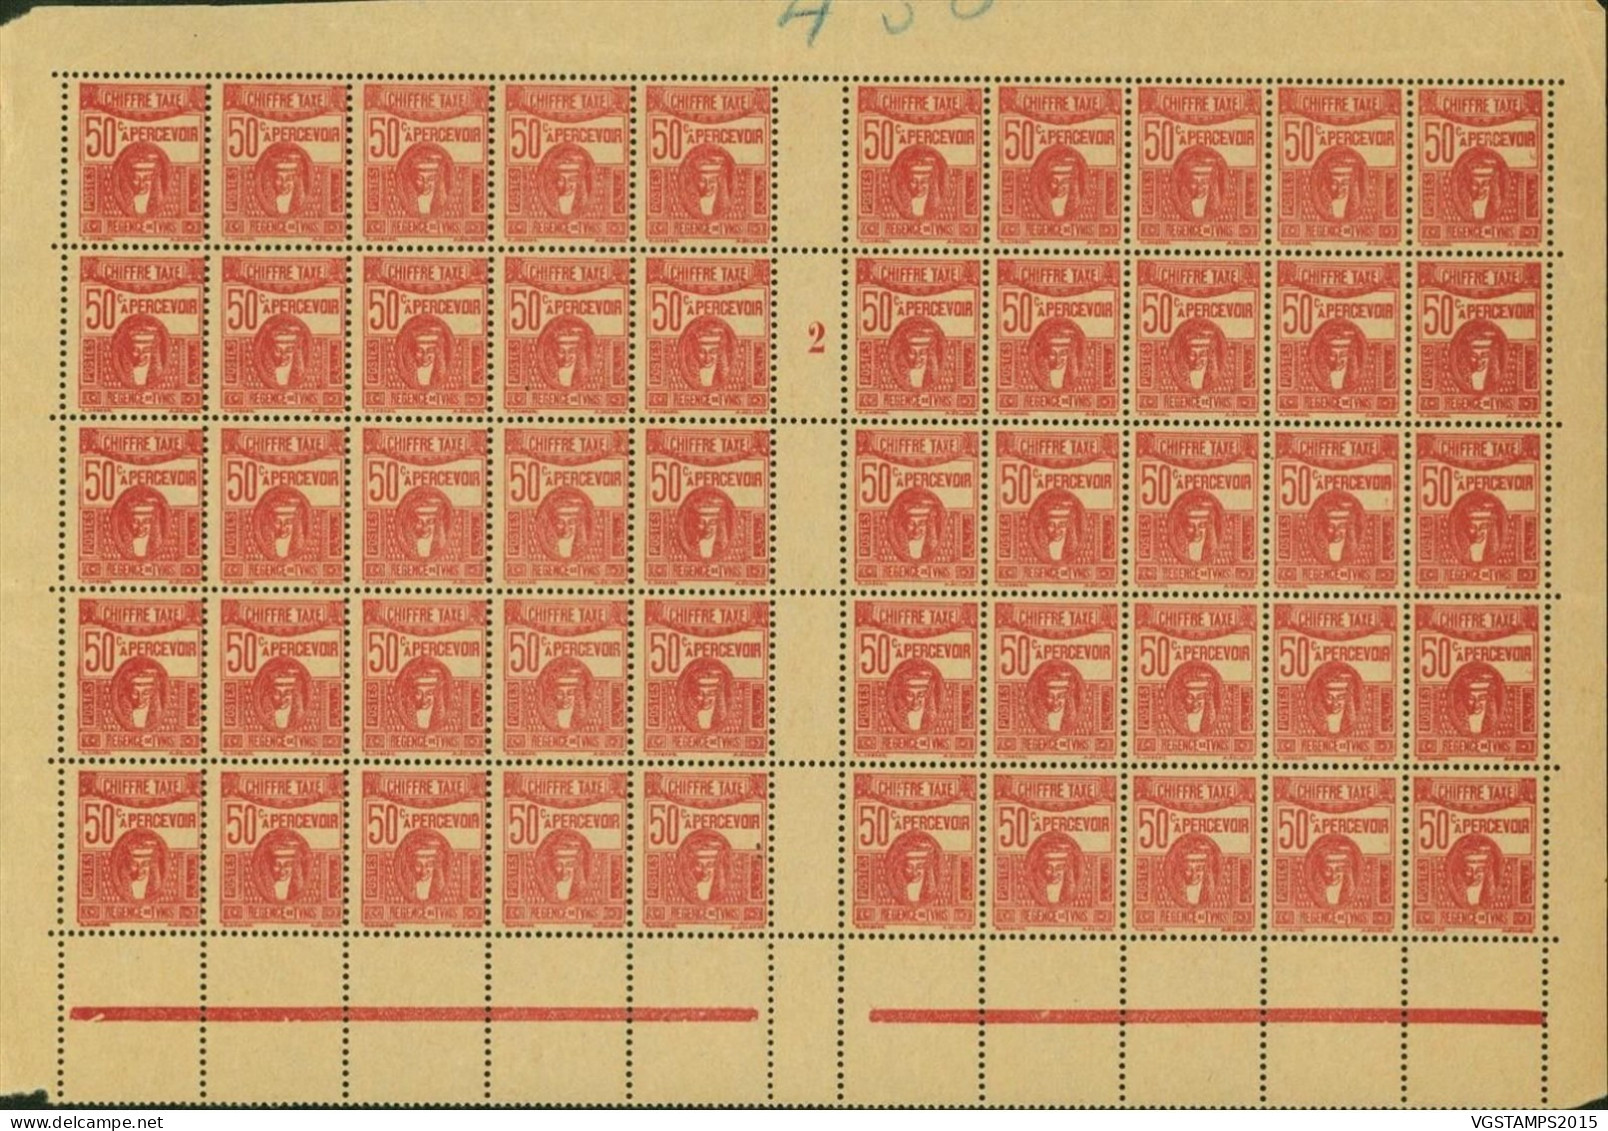 Tunisie 1932 - Colonie Française- Timbres Neufs. Yvert Taxe Nr.: 43. Panneau De 50 Avec Millesime "2"... (EB) AR-02703 - Unused Stamps